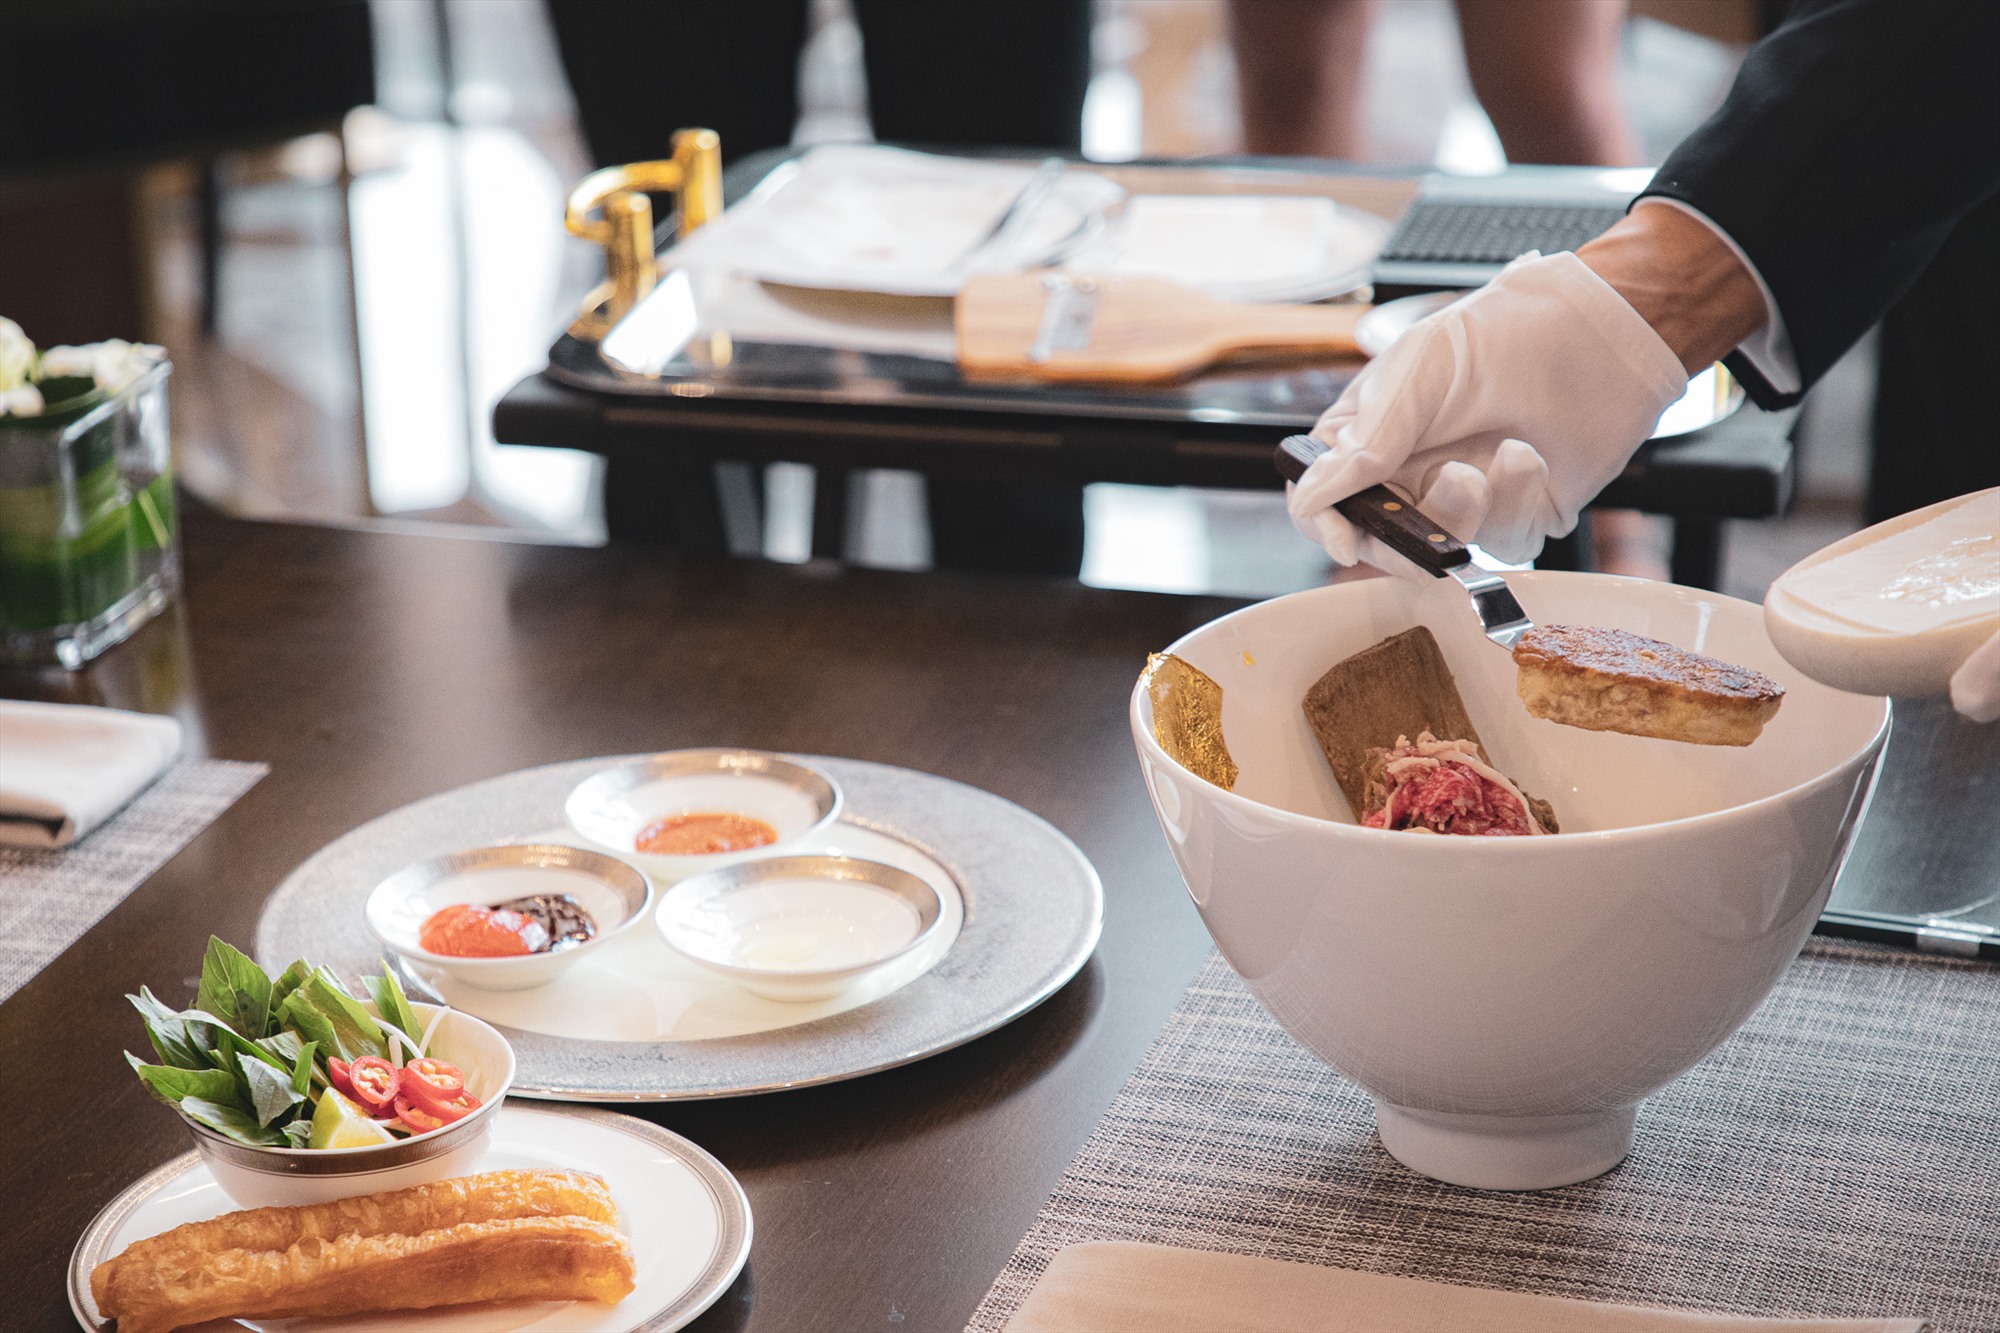 Khi phục vụ, nhân viên nhà hàng sẽ lần lượt đặt thịt bò, gan ngỗng, bào lát nấm truffle và dát vàng cho bát phở ngay trước mặt khách.